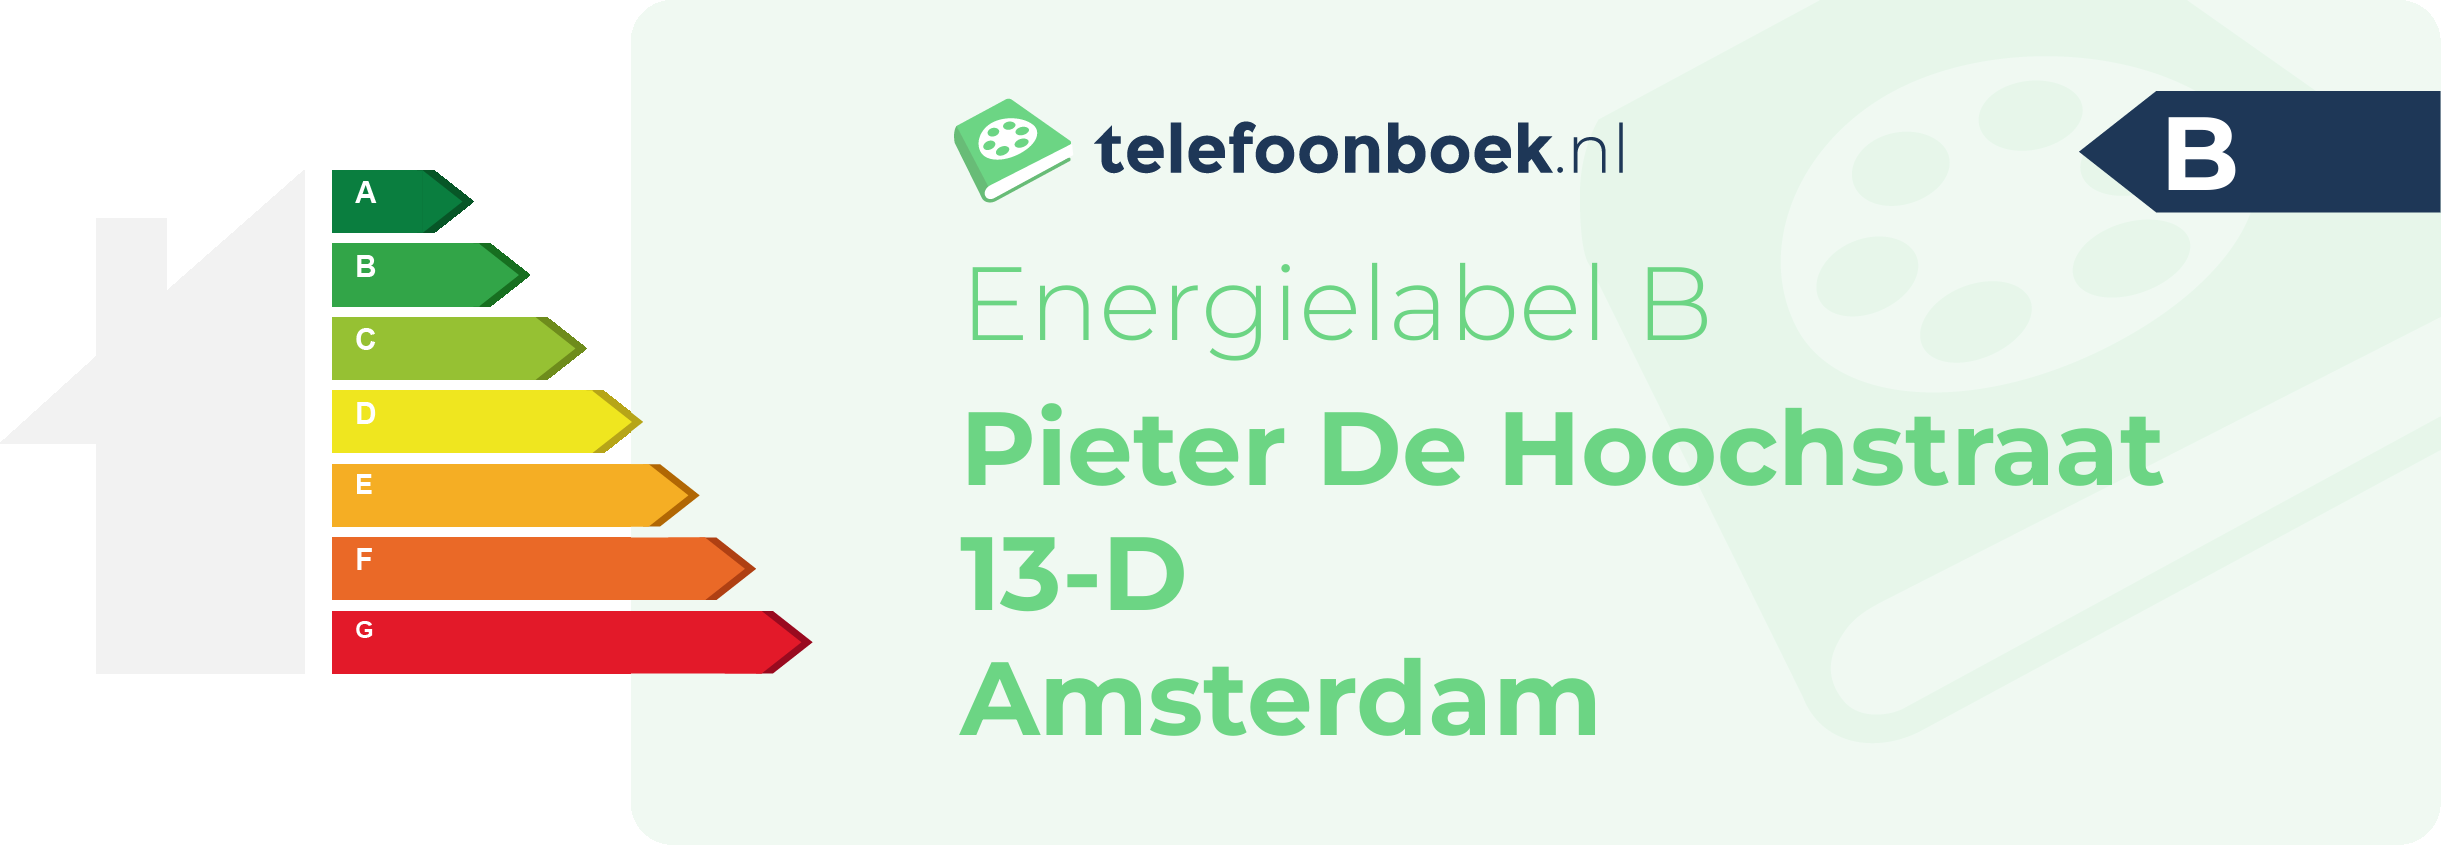 Energielabel Pieter De Hoochstraat 13-D Amsterdam